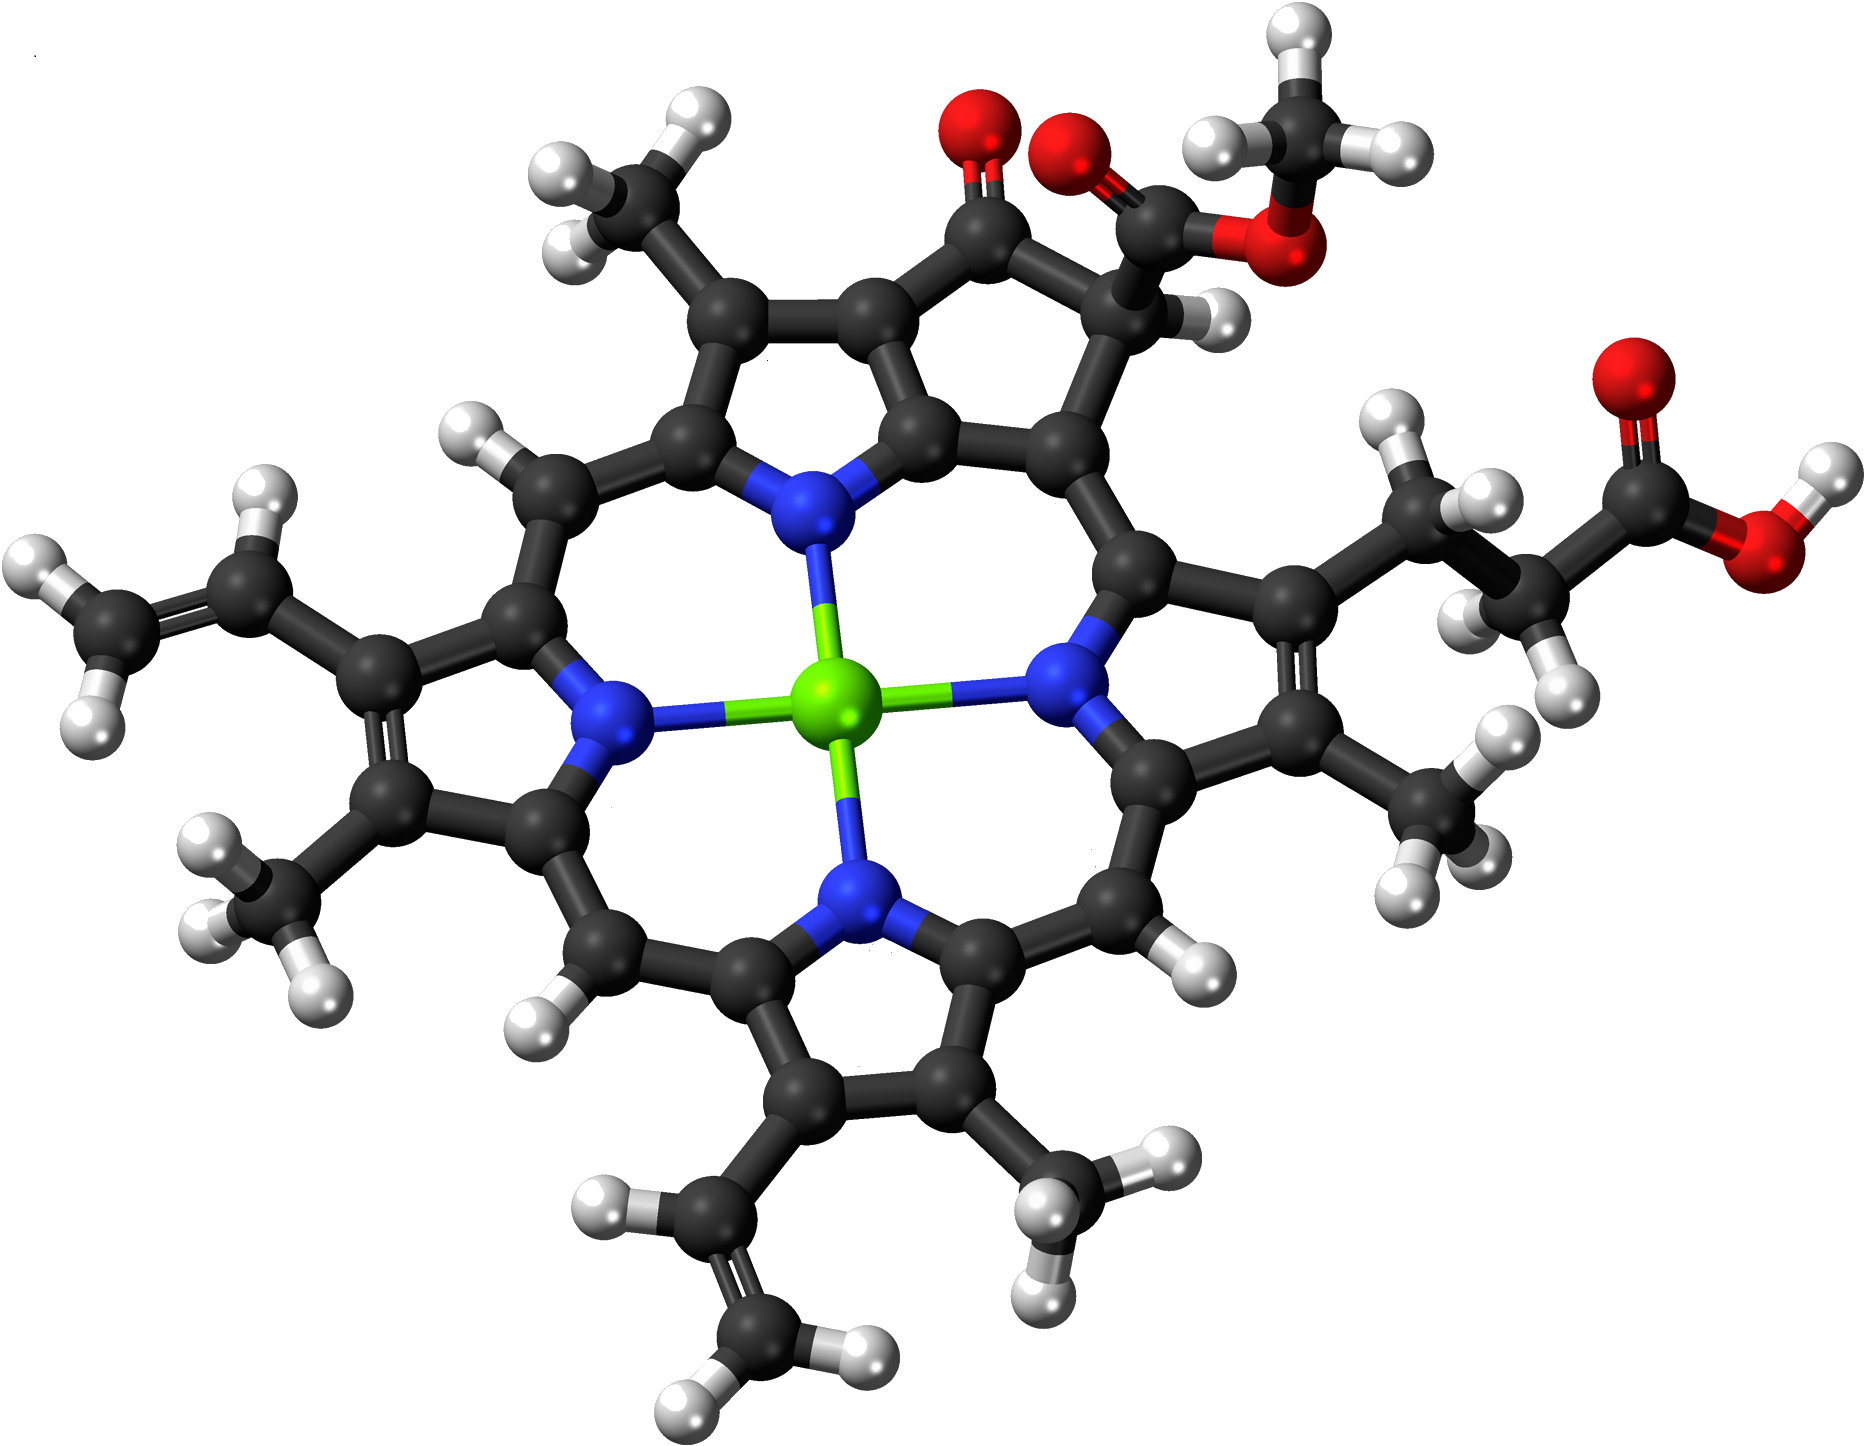  Klorofyll C2 molekyl* - en av naturens egna lösningar på att generera energi ur växthusgaser, solljus och vatten. *Plus en KATALYSATOR. 